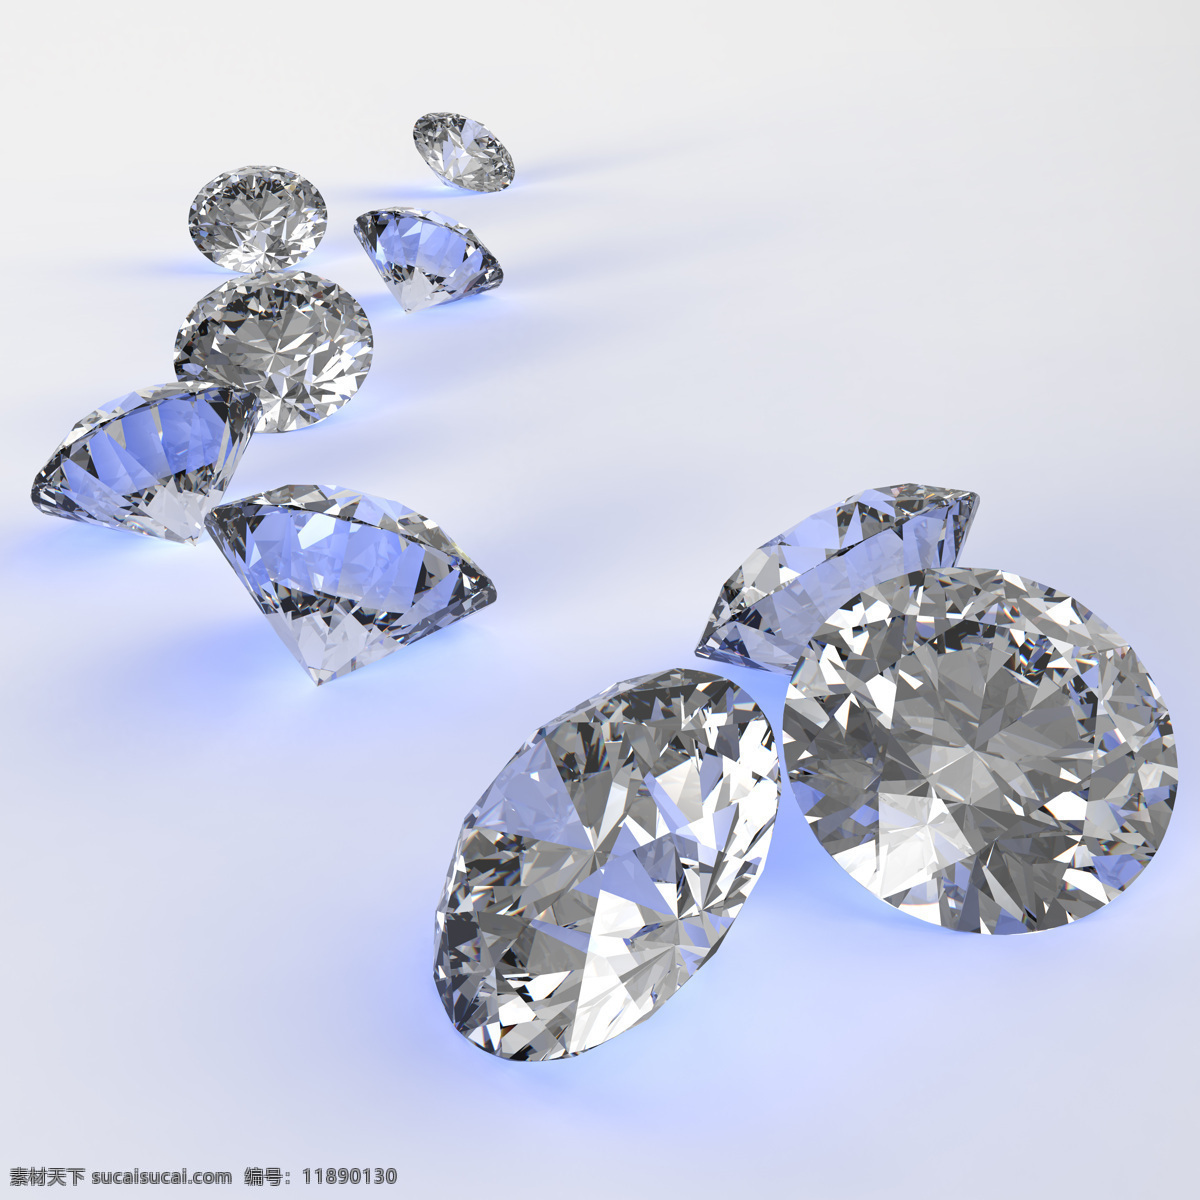 彩色 锥形 钻石 水晶 钻石摄影 钻石素材 珠宝 珠宝服饰 生活百科